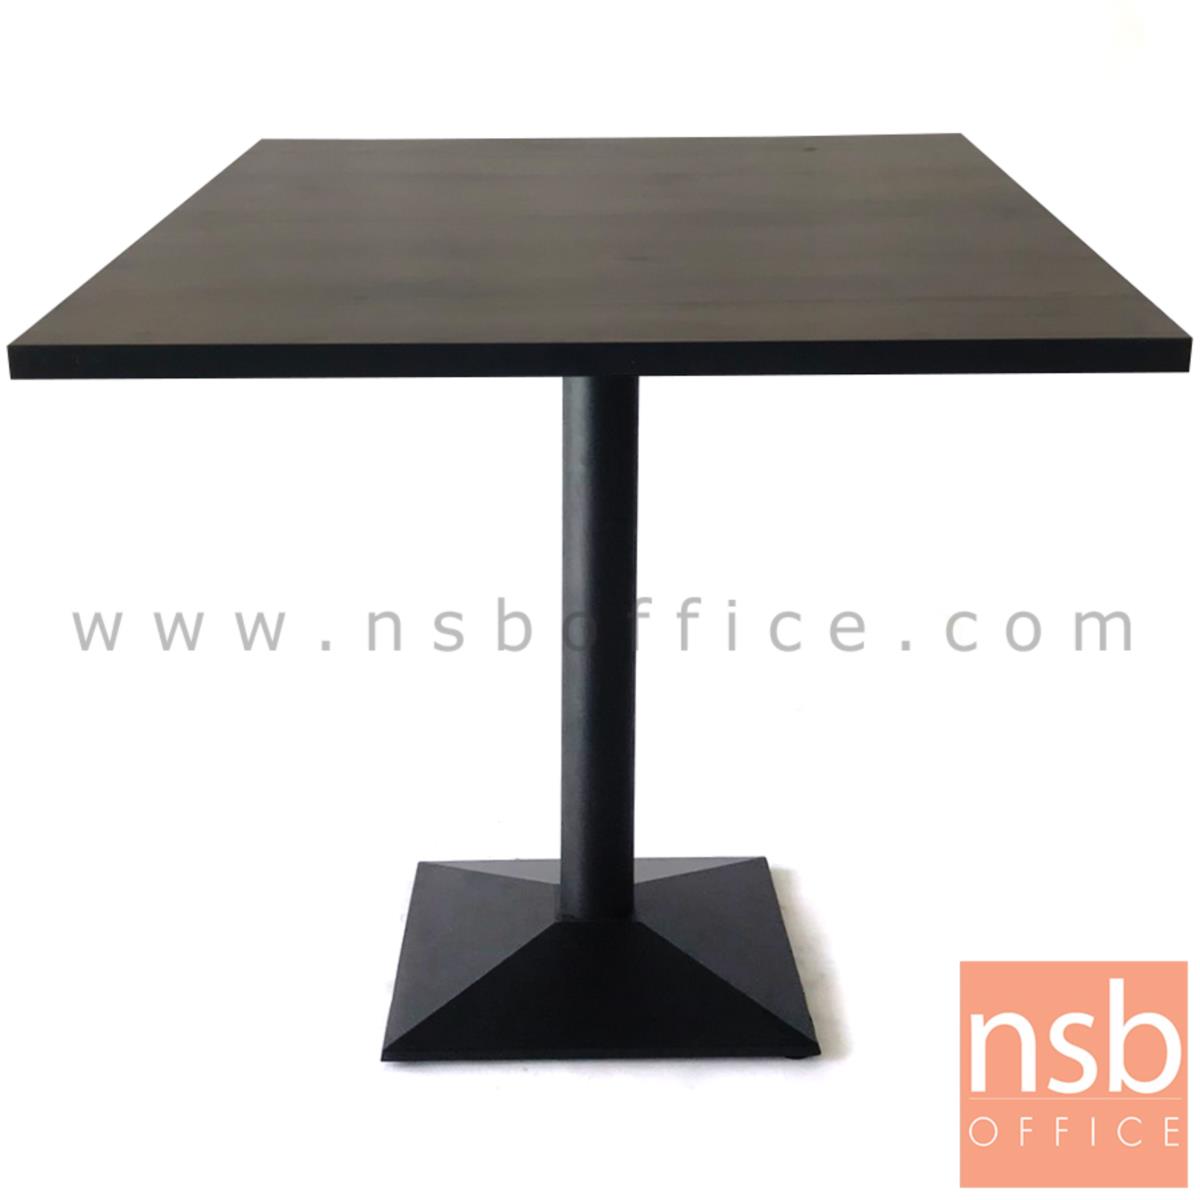 ขาโต๊ะบาร์ทรงสี่เหลี่ยมปิรามิด สีดำ รุ่น PIRAMID  